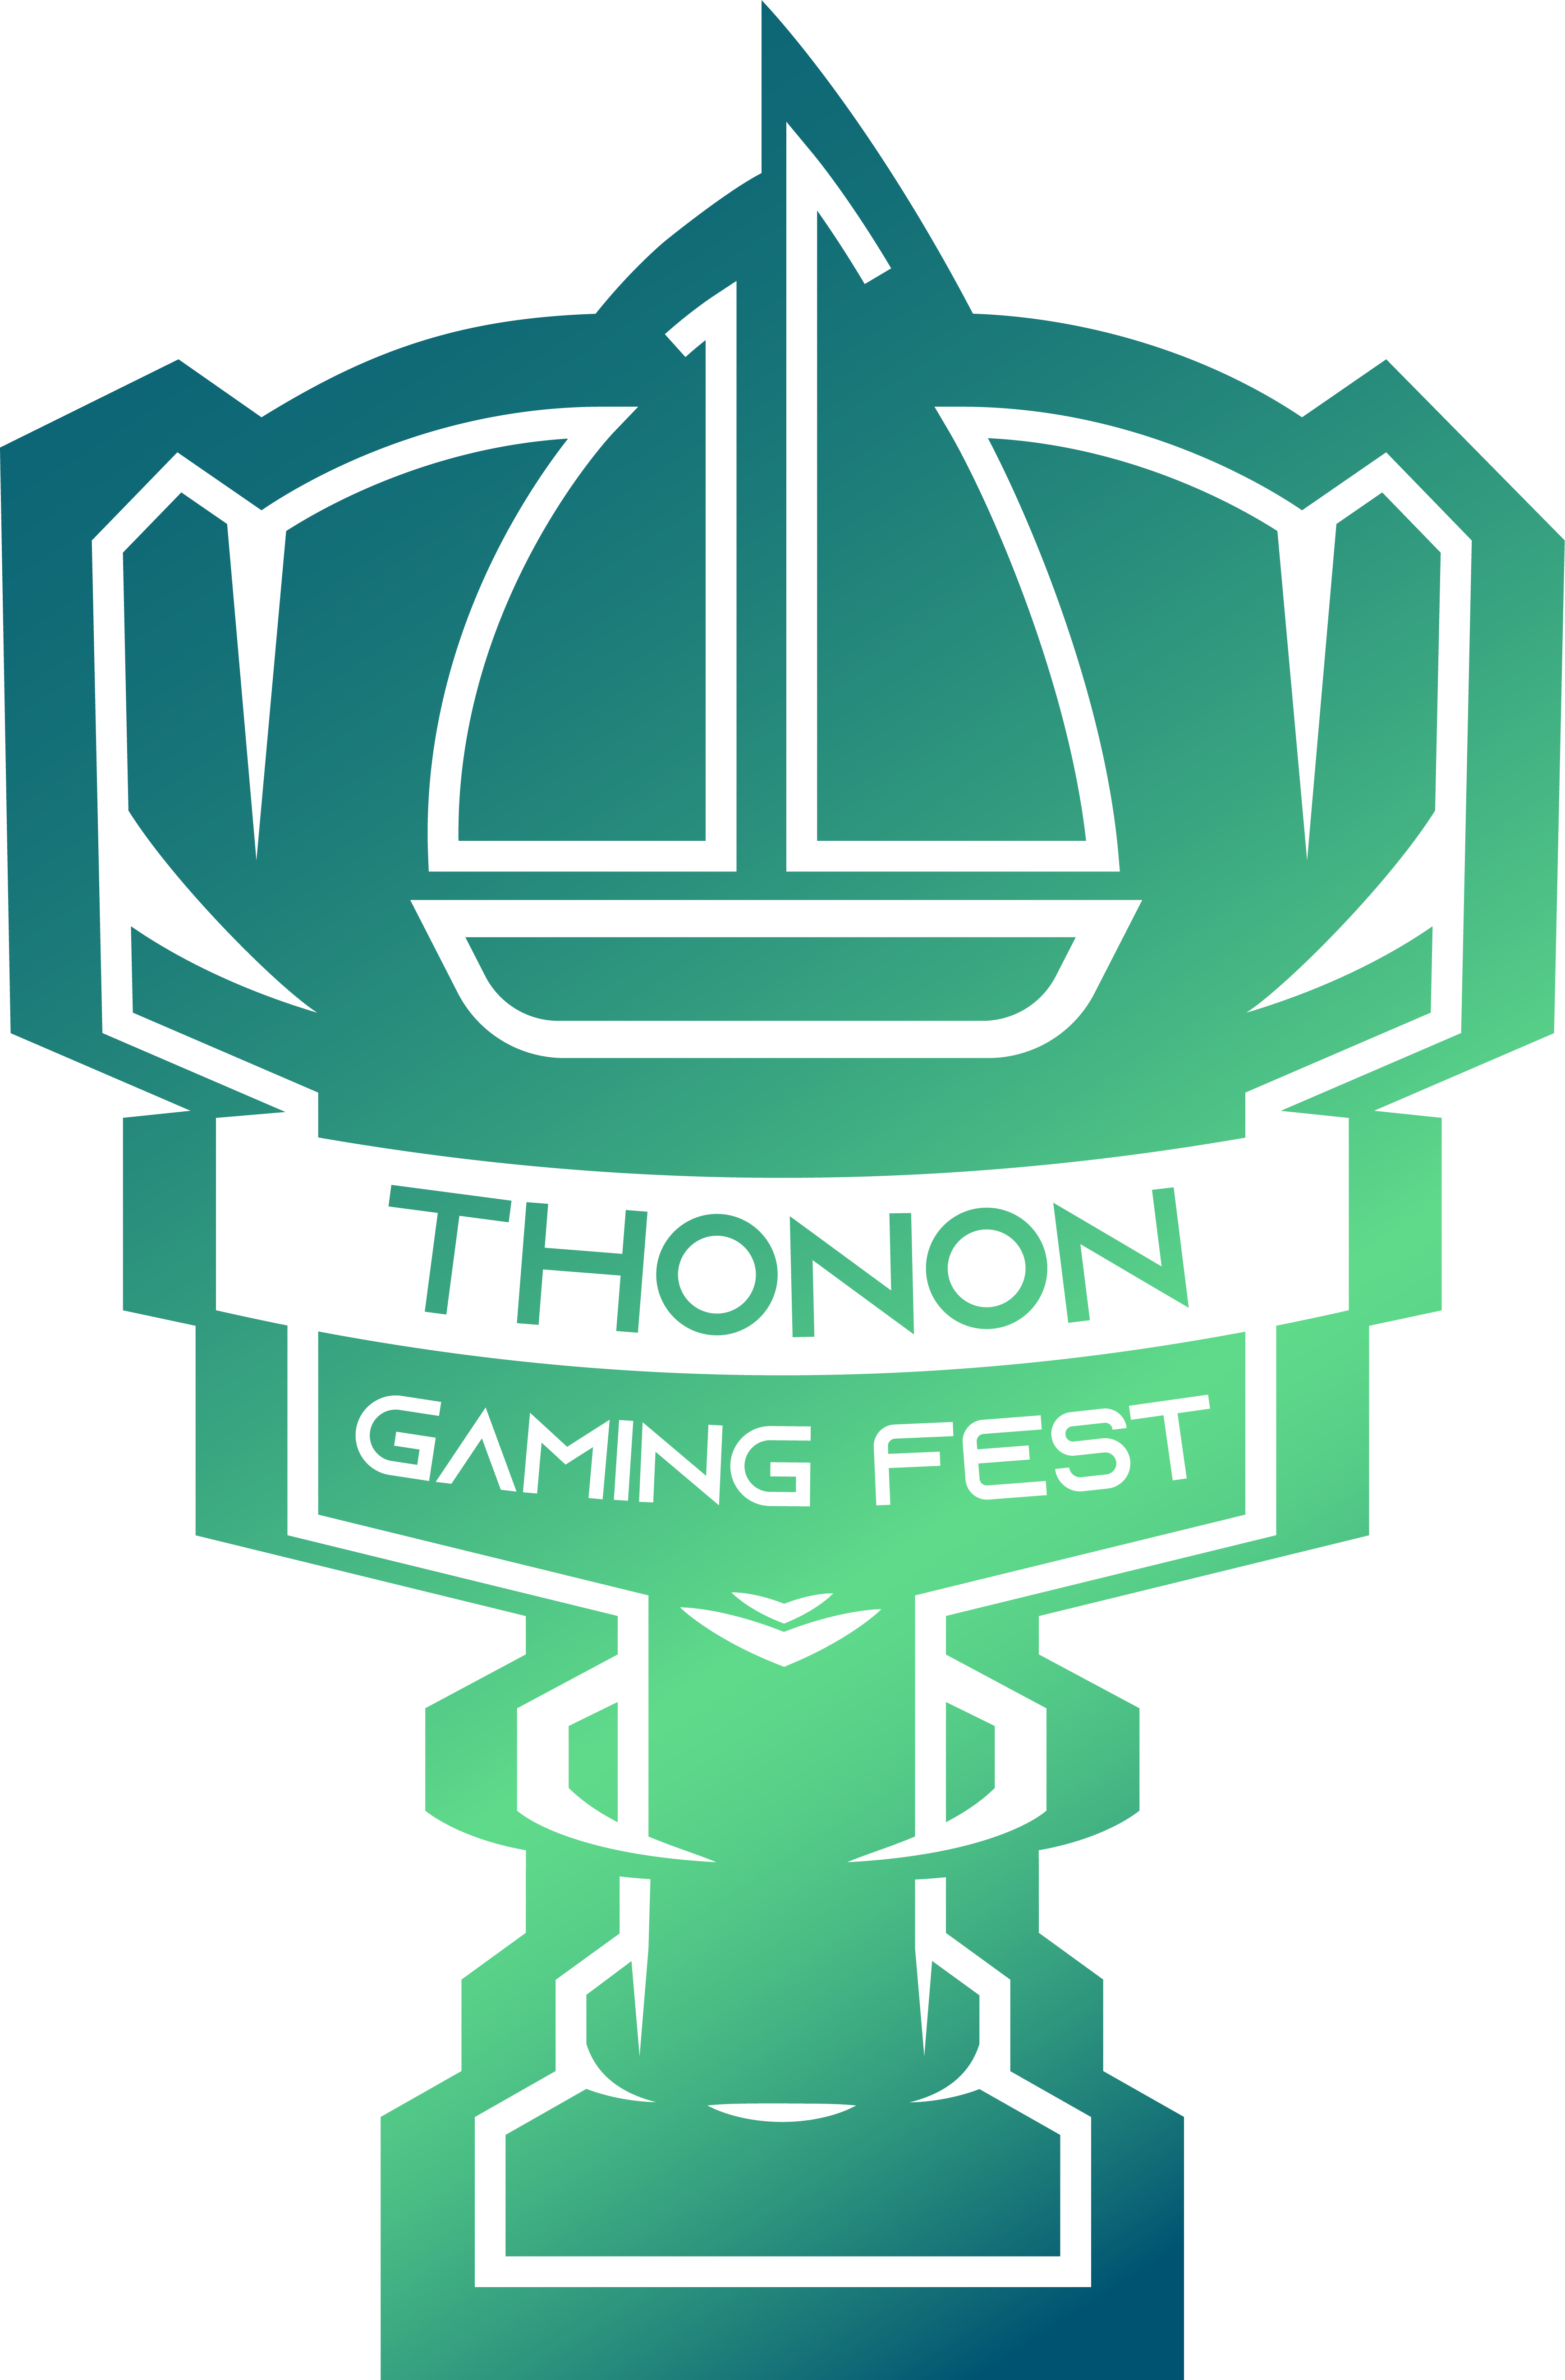 Thonon Gaming Fest logo événement esport